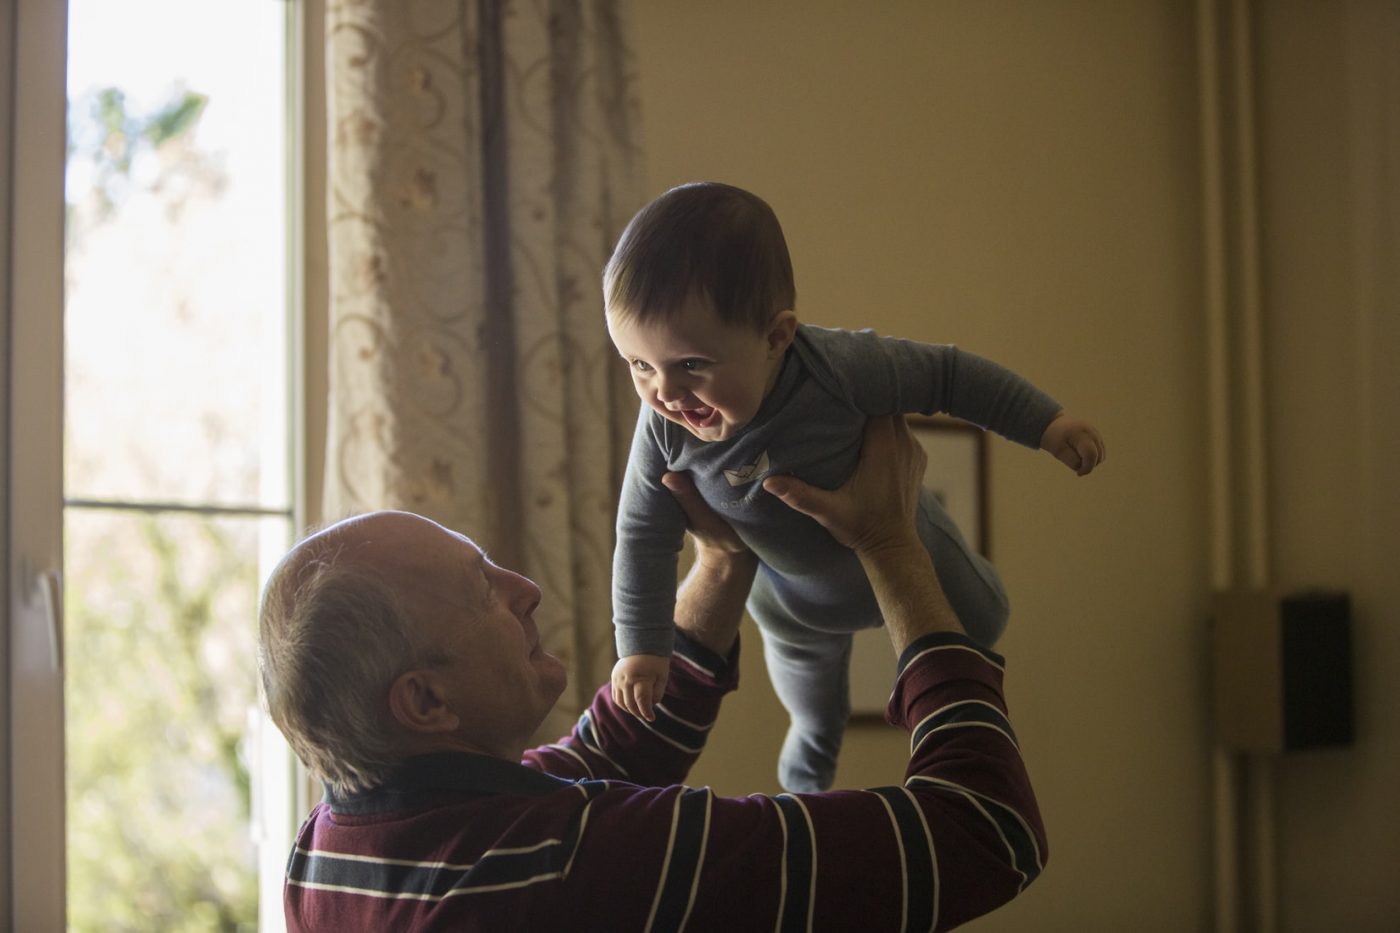 Bake i djedovi koji čuvaju unuke dokazano žive duže